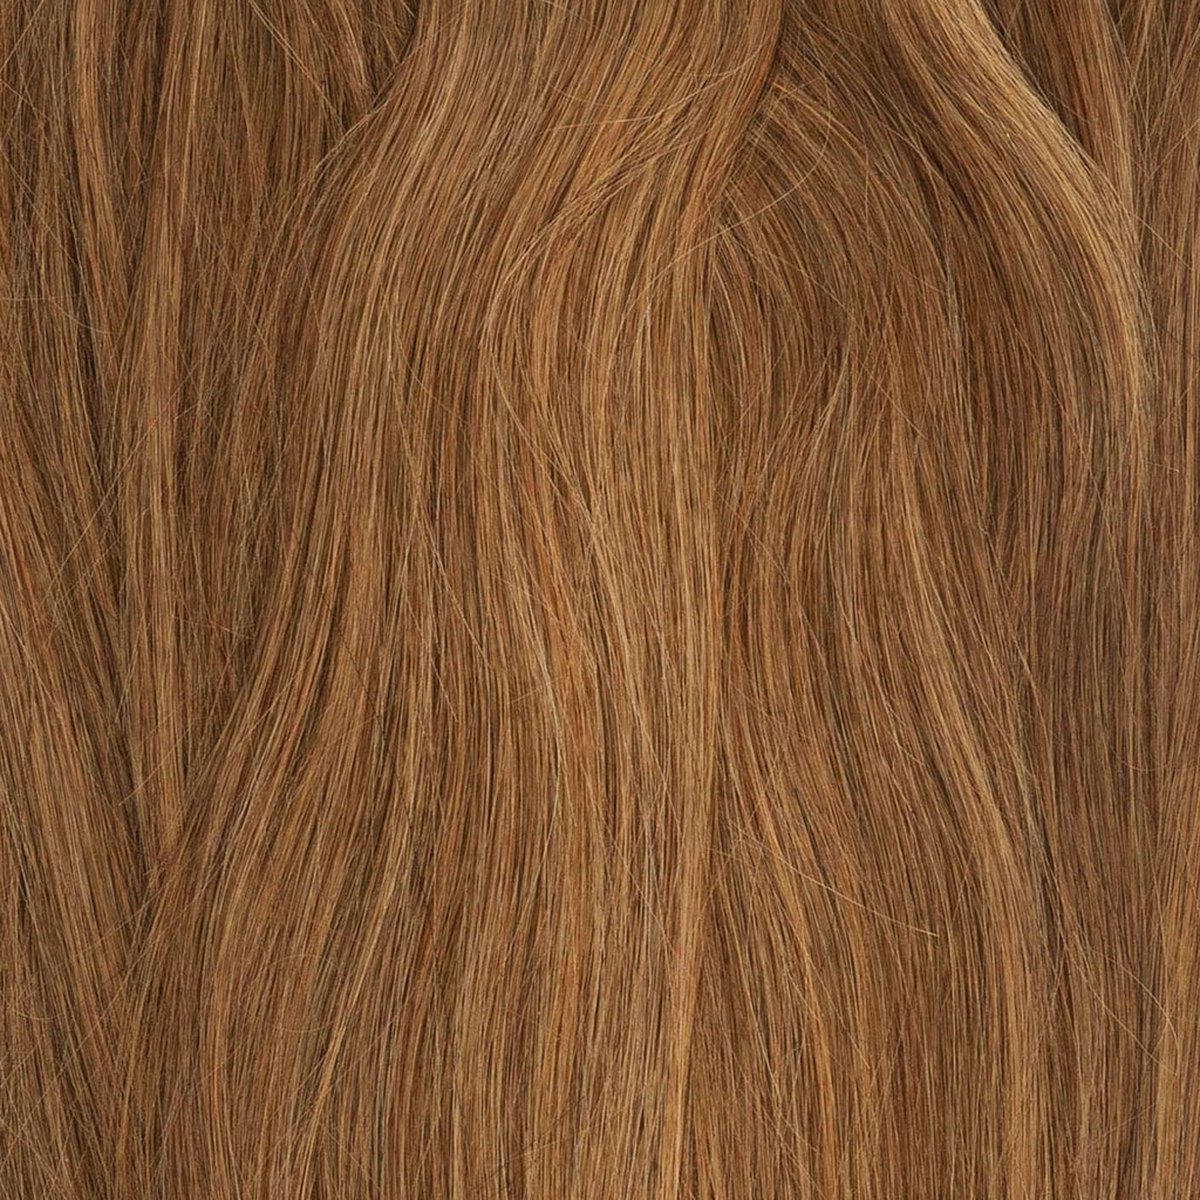 My Hair Affair - Hairextensions - Seamless Clip In Hair - Light Brown - Human Hair - Double Drawn